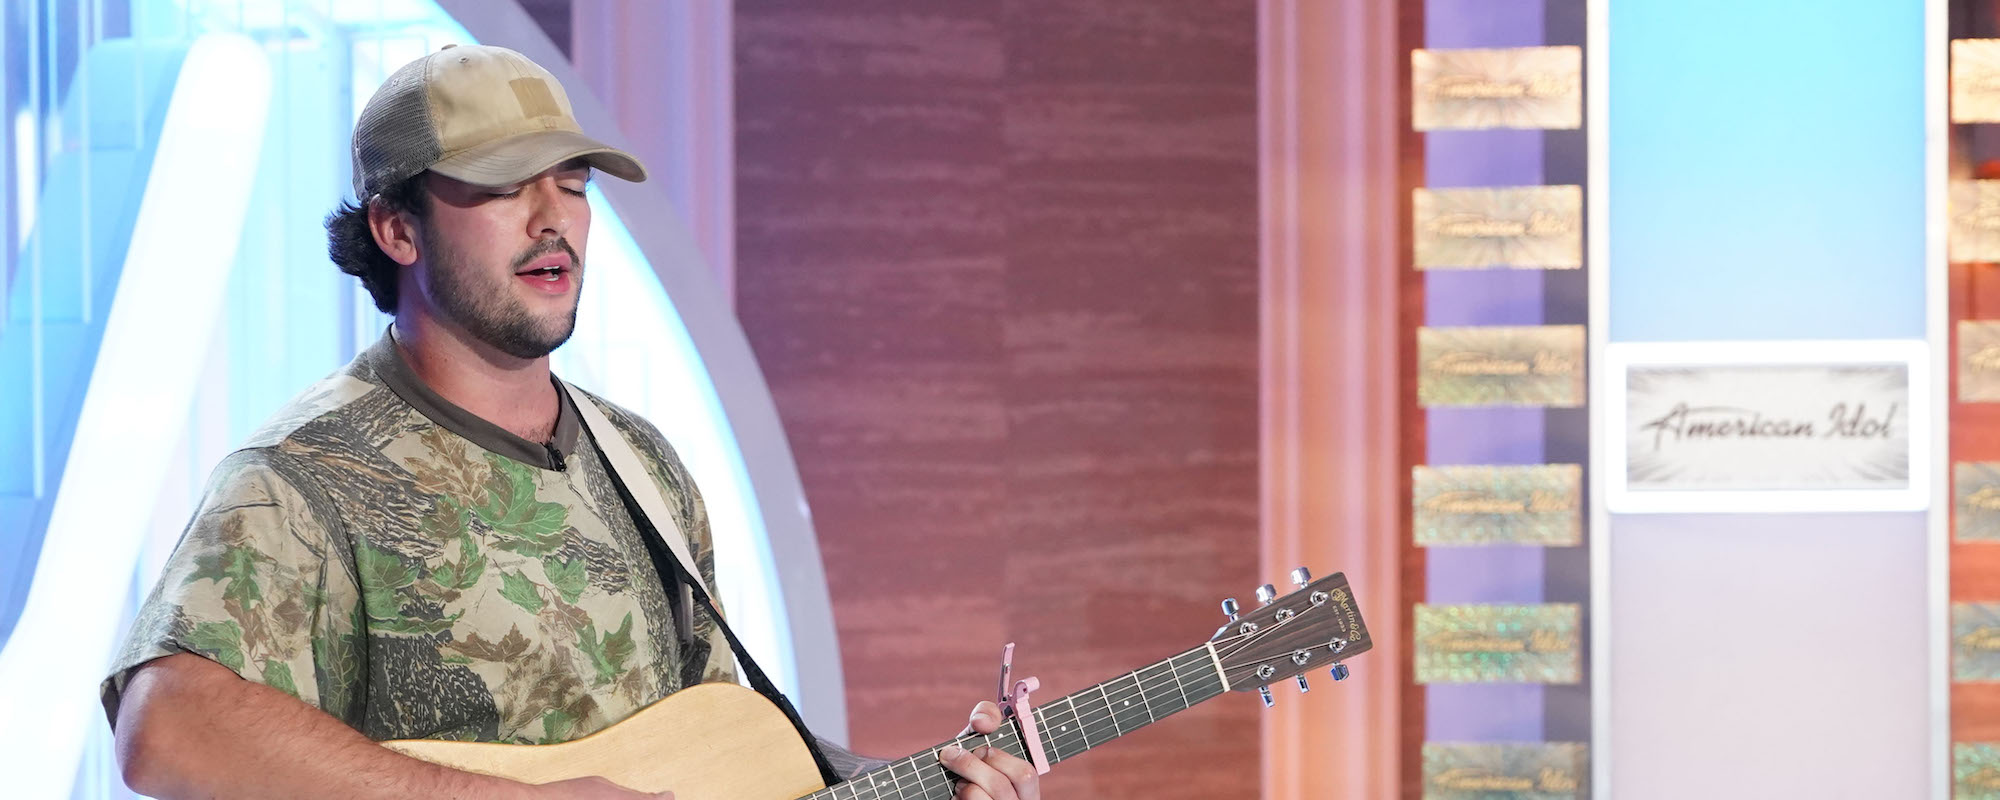 Preston Duffee partage une ballade country originale en l'honneur de sa mère décédée dans "American Idol"